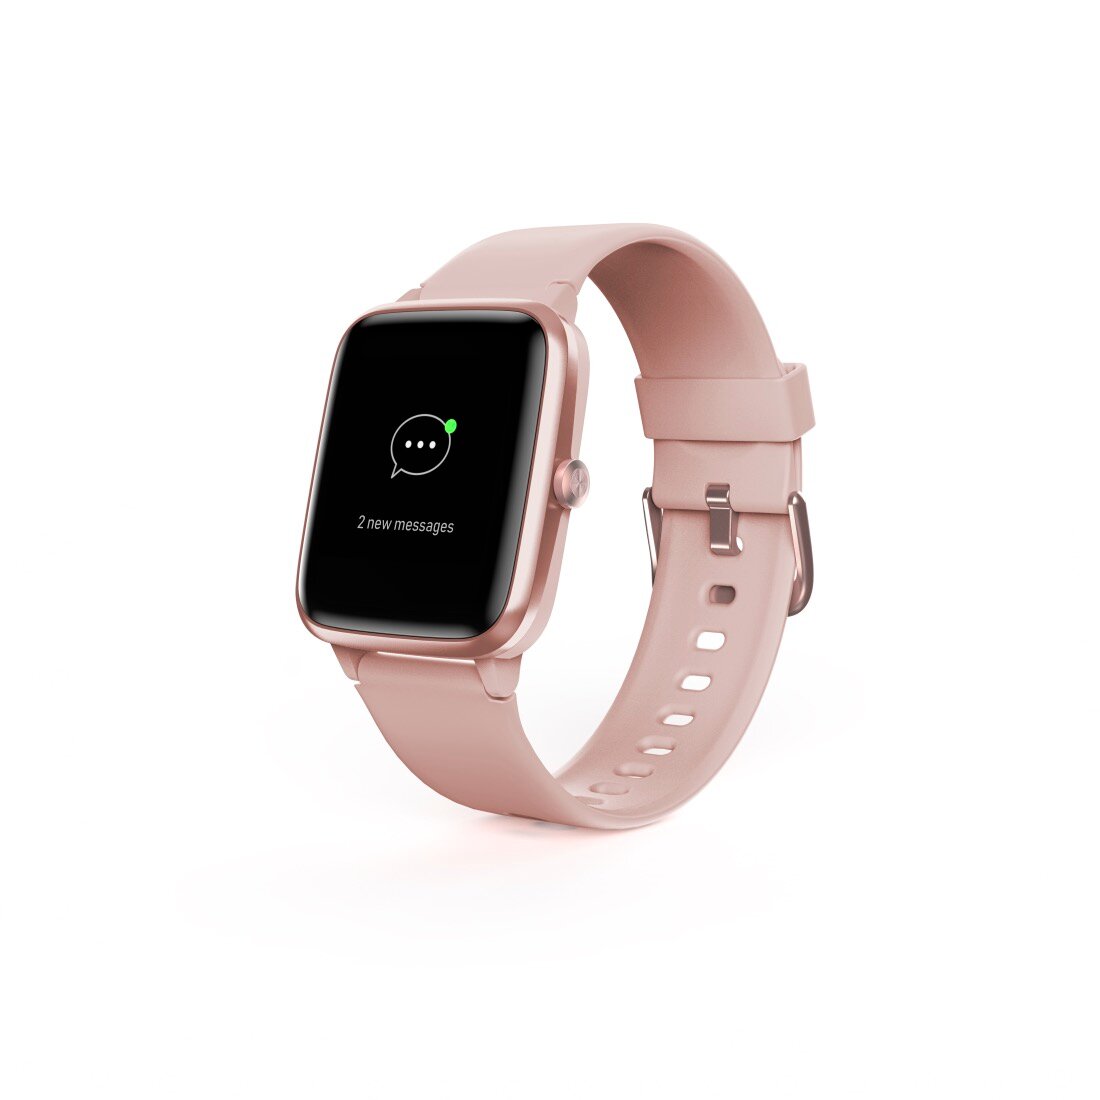 Smartwatch Hama Fit Watch 5910 GPS pudrowy róż widok od prawej strony na ekran wyświetlający powiadomienie o nowych wiadomościach